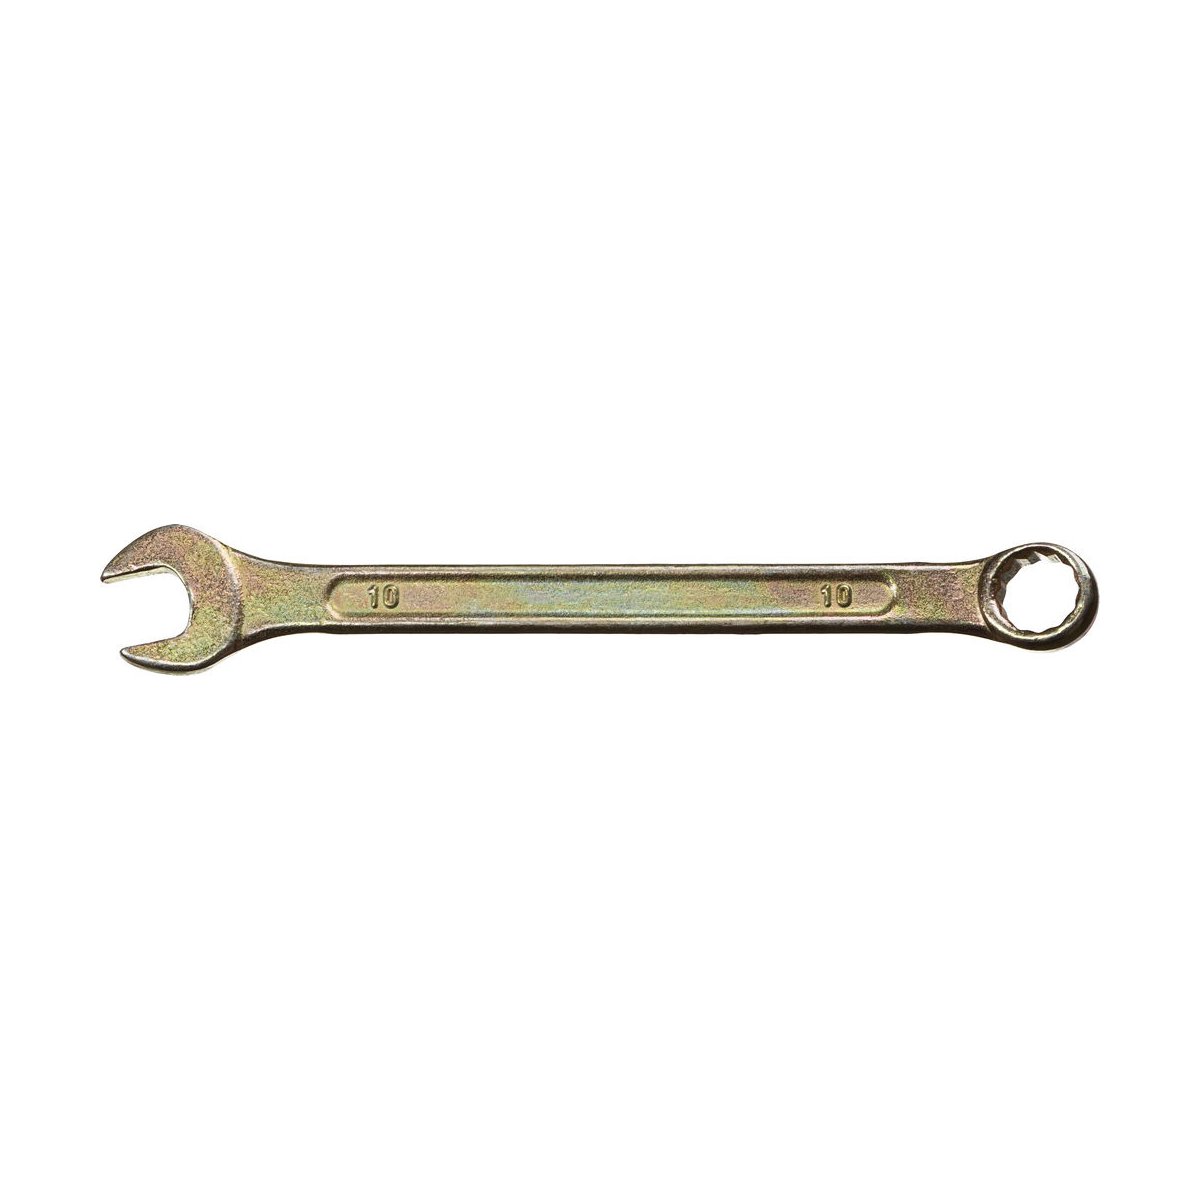 DEXX 10 мм, комбинированный гаечный ключ 27017-10